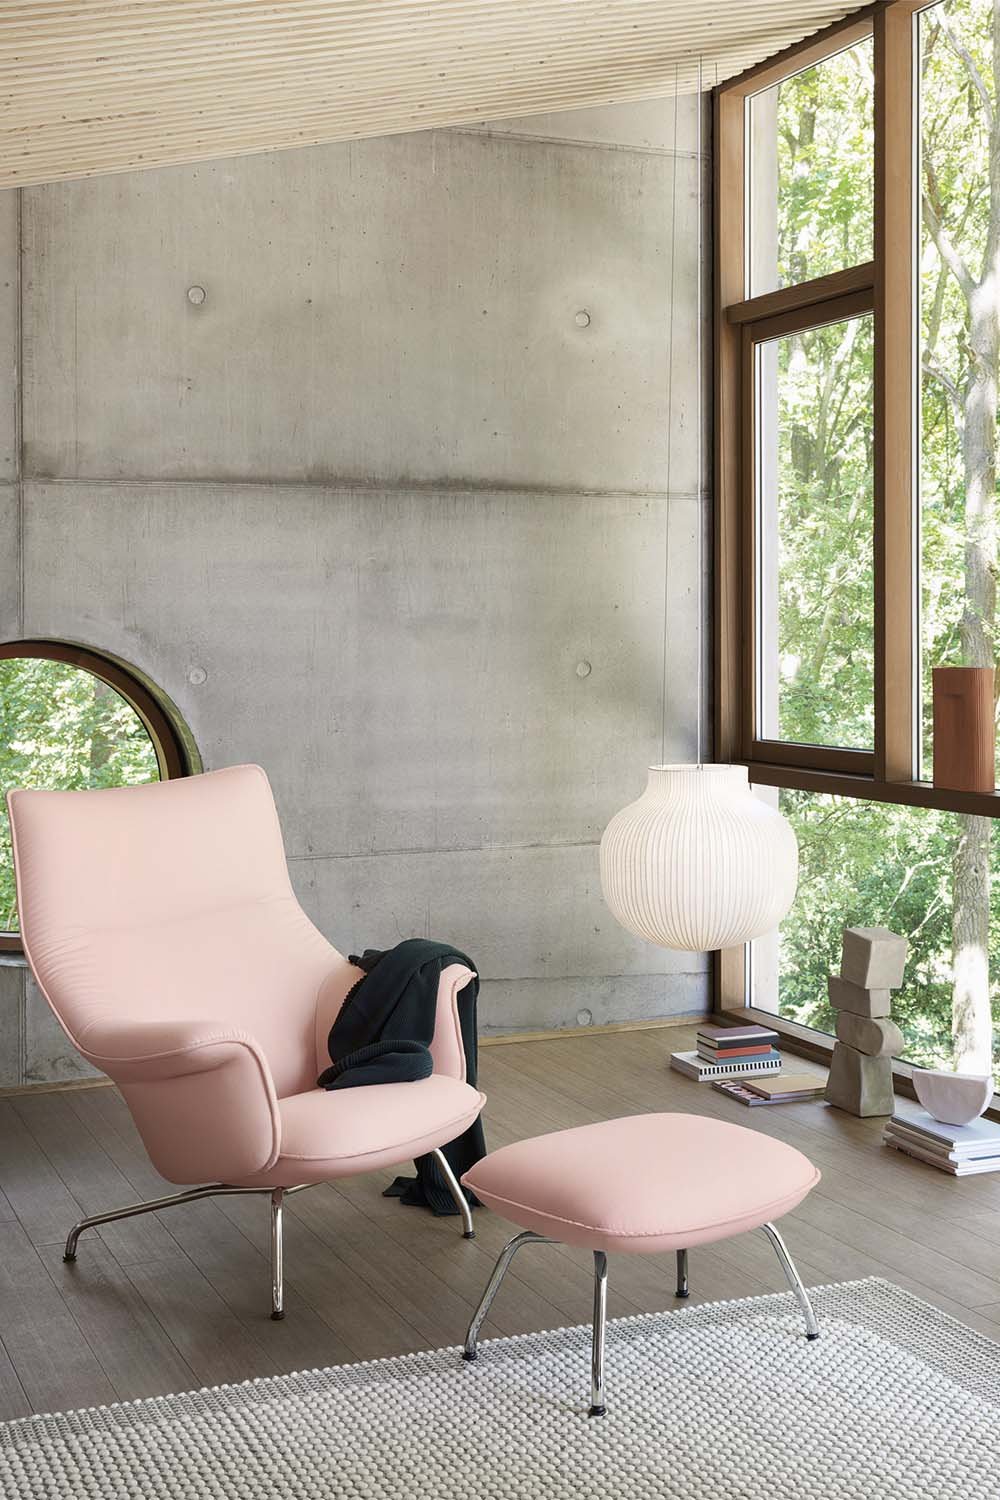 Wer einen Ausblick ins Grüne hat, ist im psychologischen Vorteil. Der rosa Pastellton des »Doze«-Lounge-Chair bringt zusätzliche Ruhe.